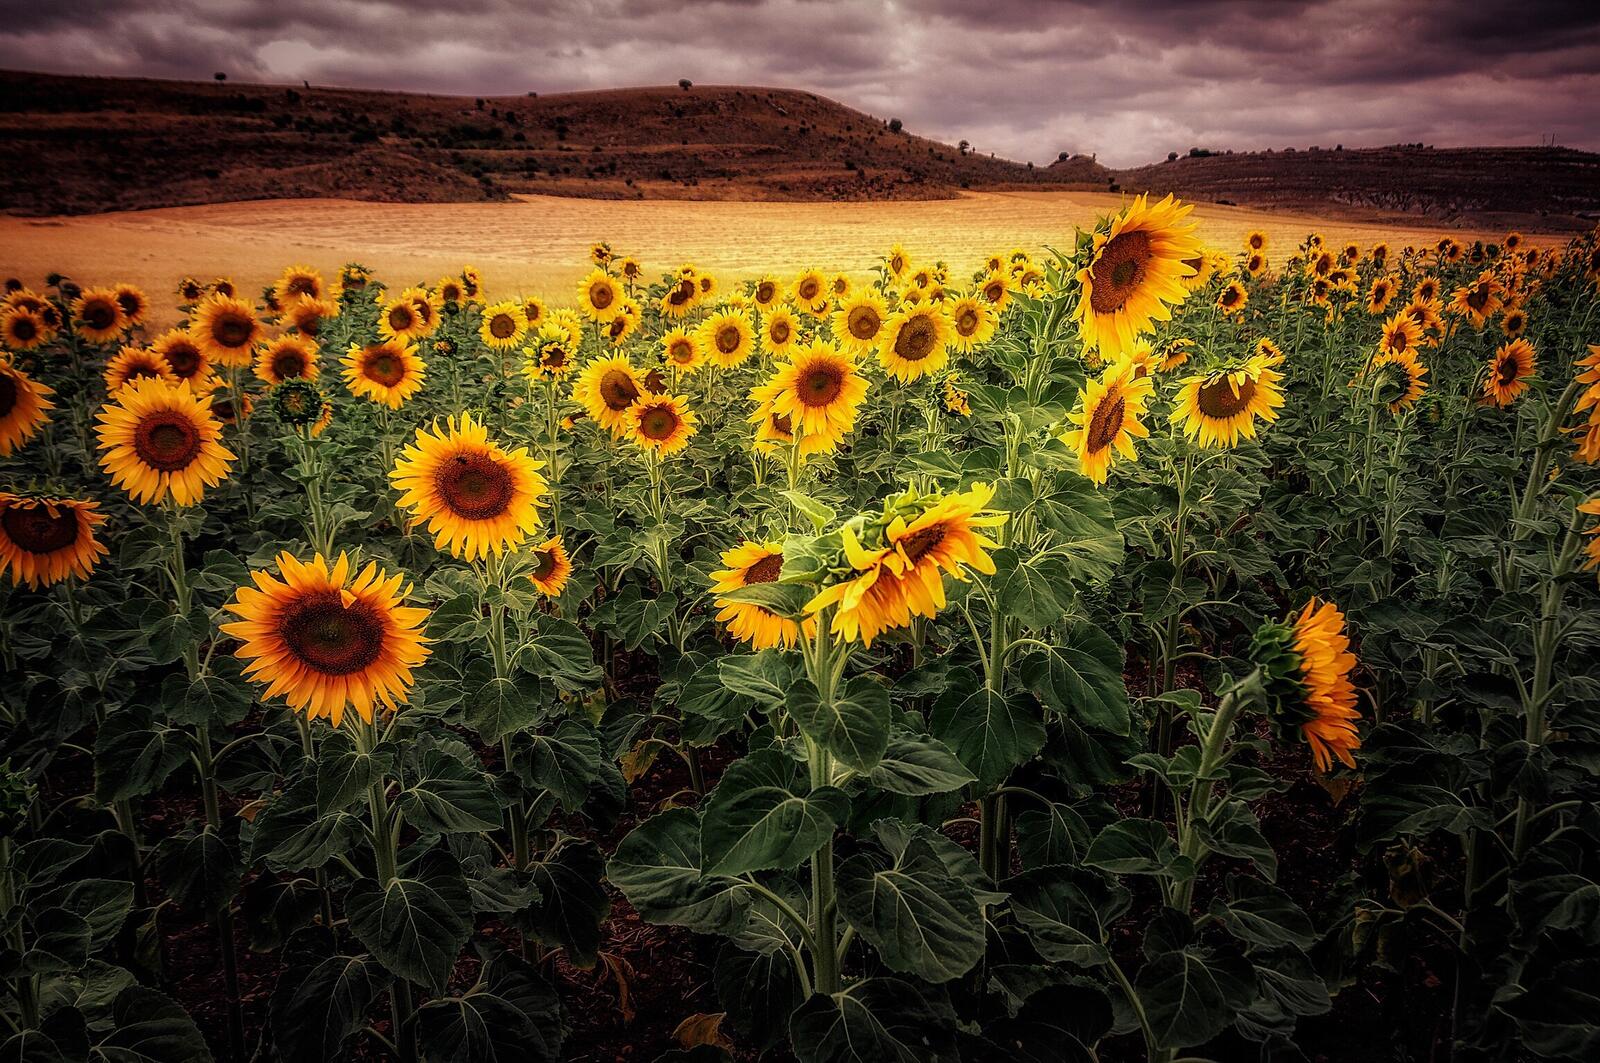 Бесплатное фото Обои закат, поле, цветы на телефон высокого качества